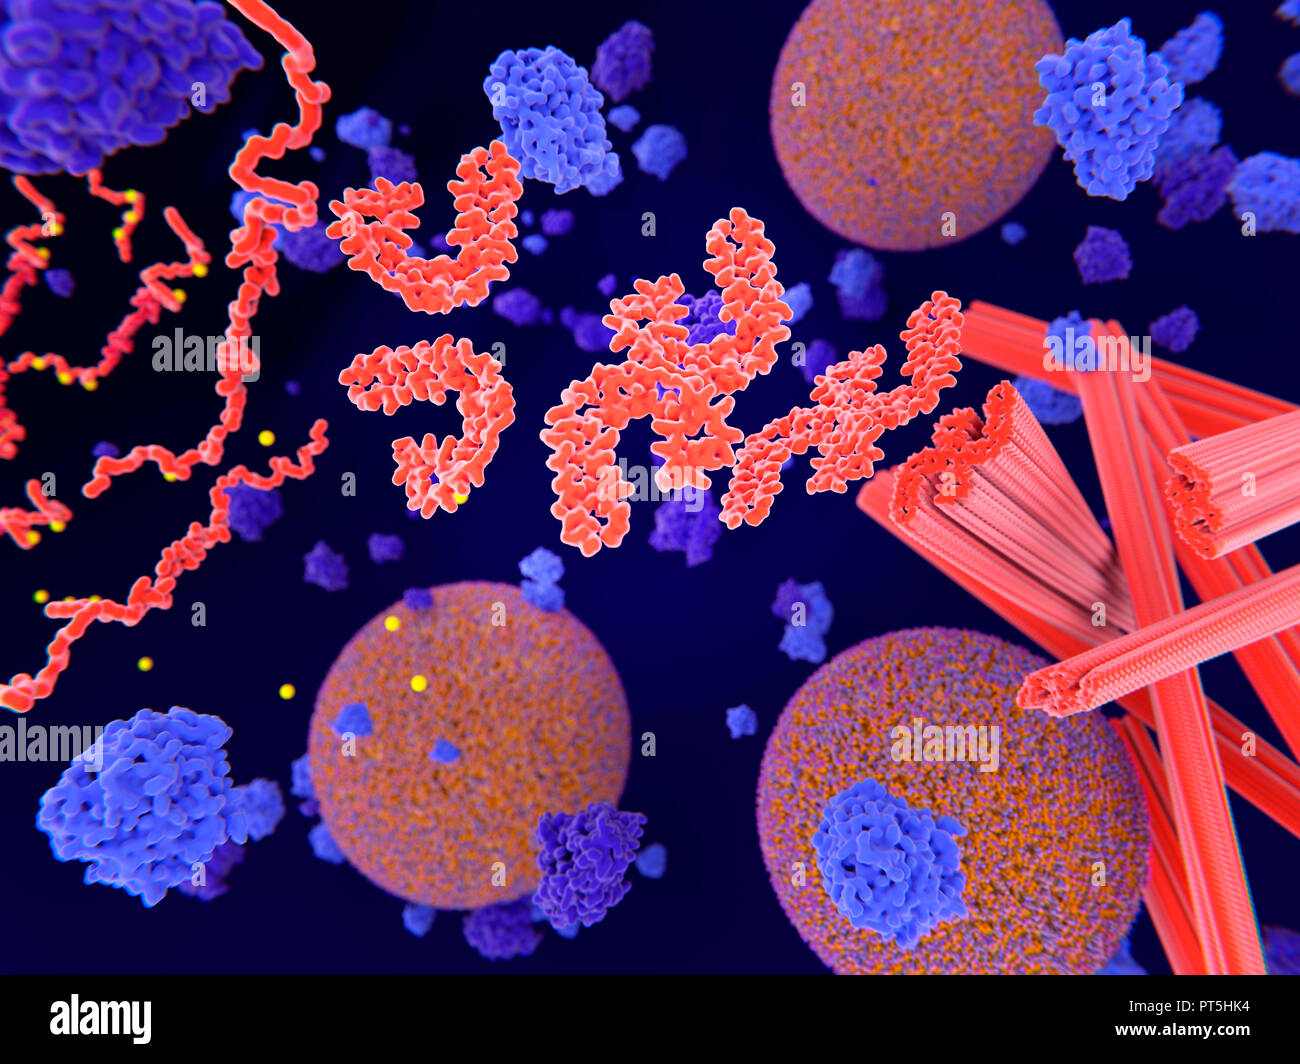 La protéine tau dans la maladie d'Alzheimer,illustration.la phosphorylation pathologique (jaune) de protéines tau (rouge-orange) par des kinases (bleu-violet) influent sur les cellules nerveuses dans ce qu'on appelle un enchevêtrement neurofibrillaire.Cette illustration montre le transport des vésicules synaptiques (orange-bleu) sphères d'être interrompue.Les protéines tau affectent également microtubles rouge (vérins).Un enchevêtrement neurofibrillaire est constitué d'agrégats et de fibres insolubles anormale de la protéine tau.la protéine tau est une protéine neural,des agrégations de qui sont connues pour jouer un rôle dans la maladie d'Alzheimer et autres troubles neuraux. Banque D'Images